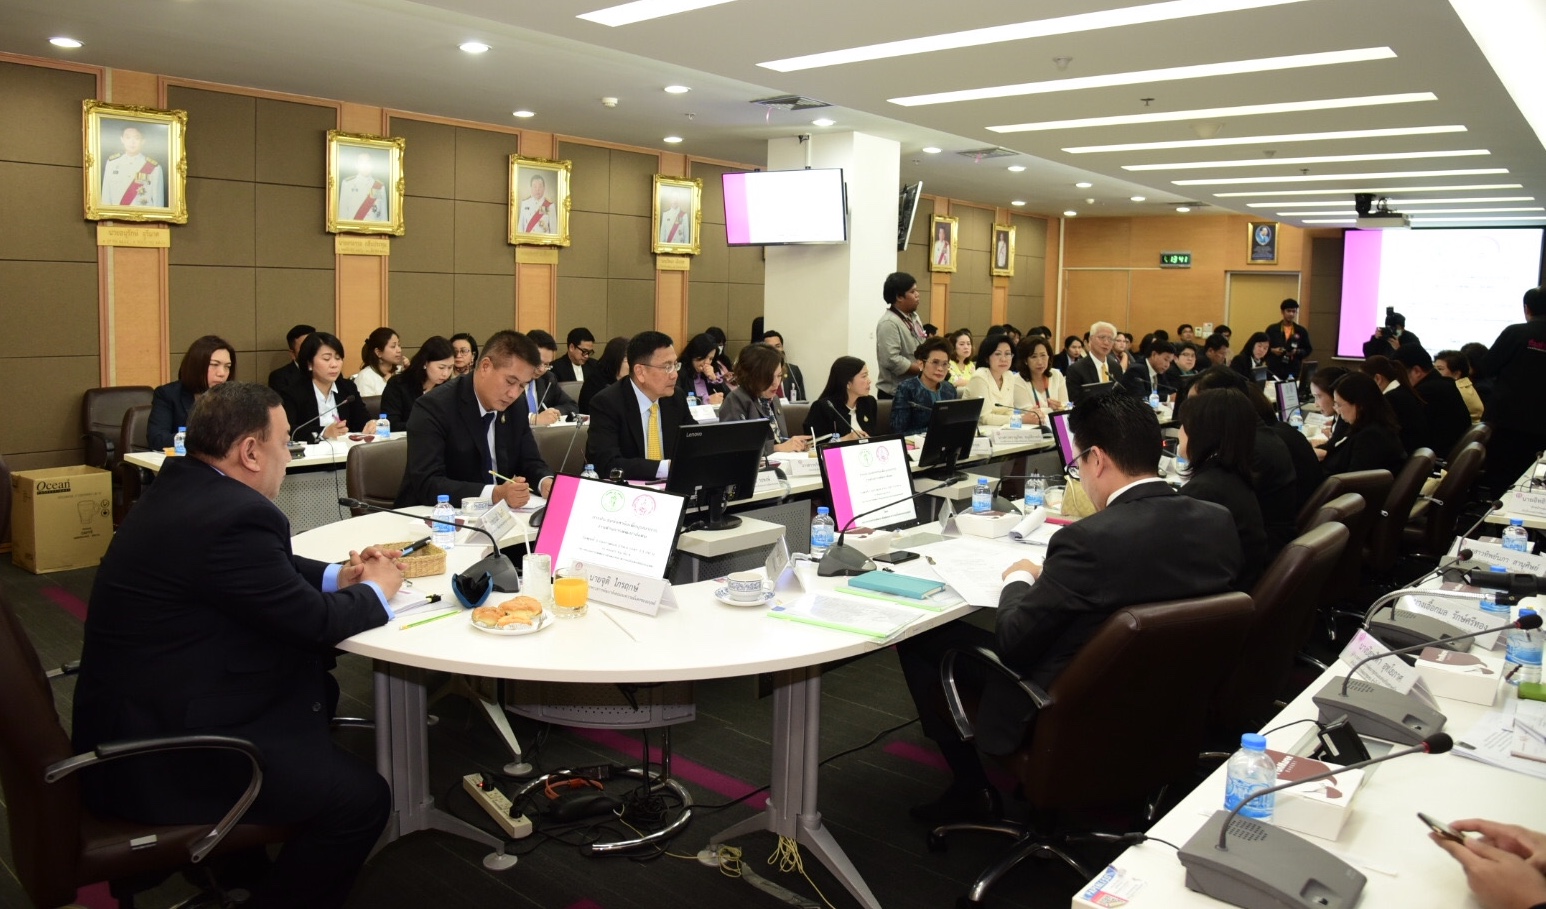 ประชุมข้อหารือเพื่อบูรณาการงานด้านการพัฒนาสังคม ร่วมกับกรุงเทพมหานคร 